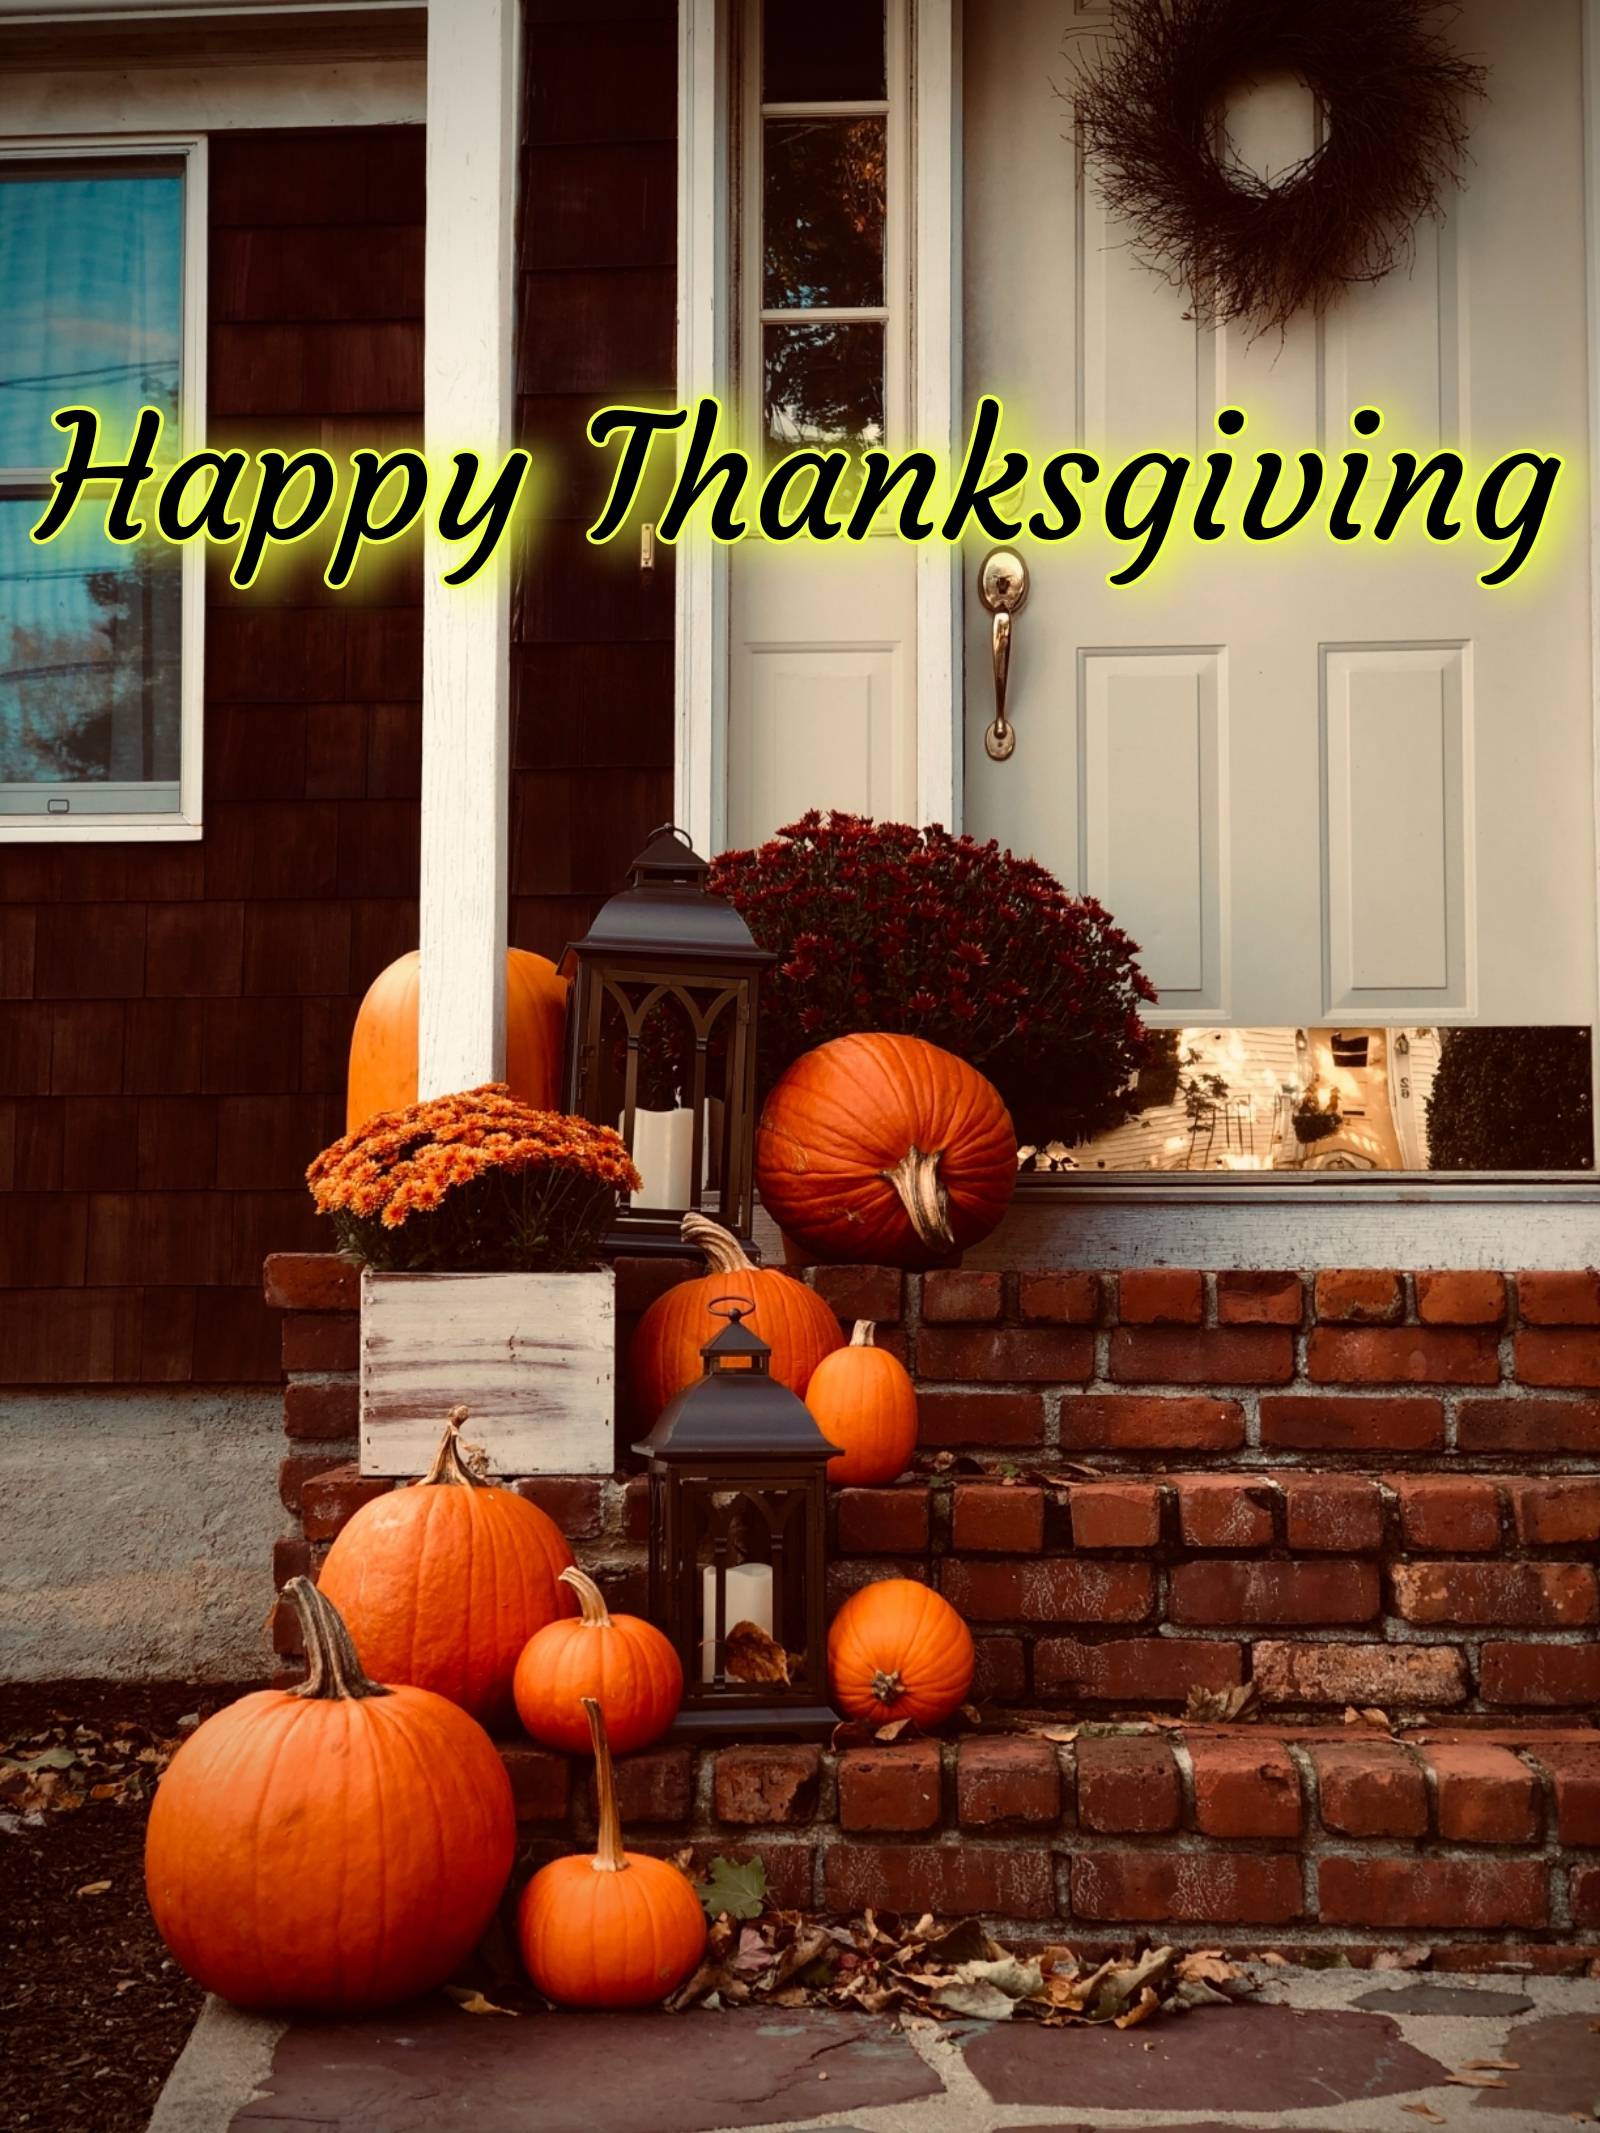 Thanksgiving Photos